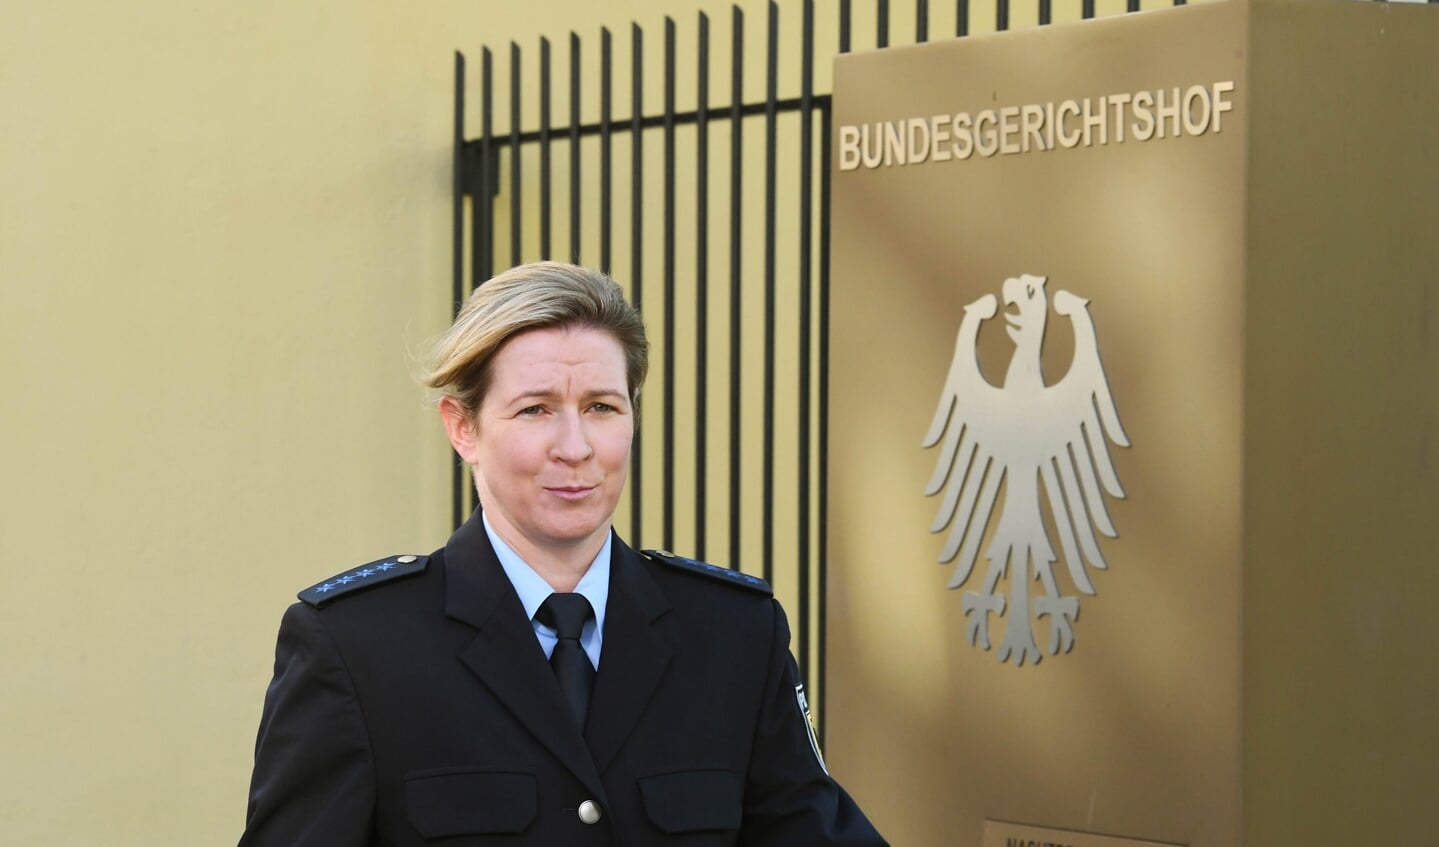 Claudia Pechstein in politie-uniform bij het Bundesgerichtshof in Karlsruhe,